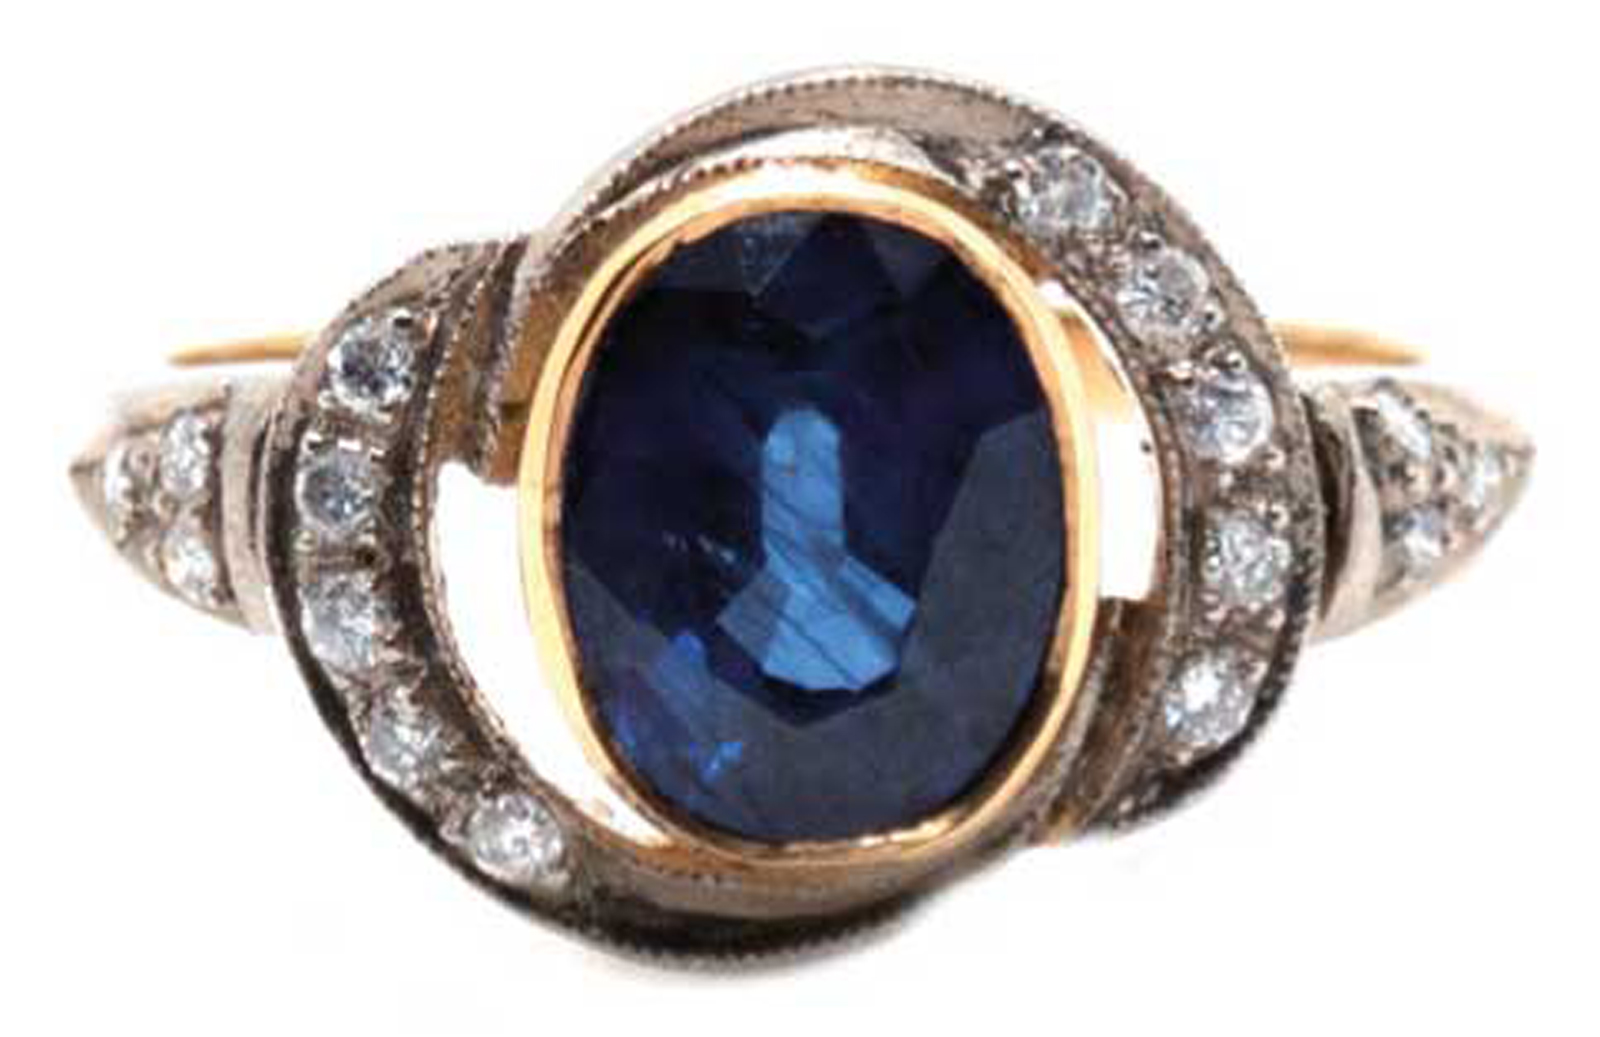 Ring, 750er GG, 4,3 g, 1 Saphir von 2,6 ct., Brillanten 0,15 ct. in 925er Silberfassung, RG 58, Inn